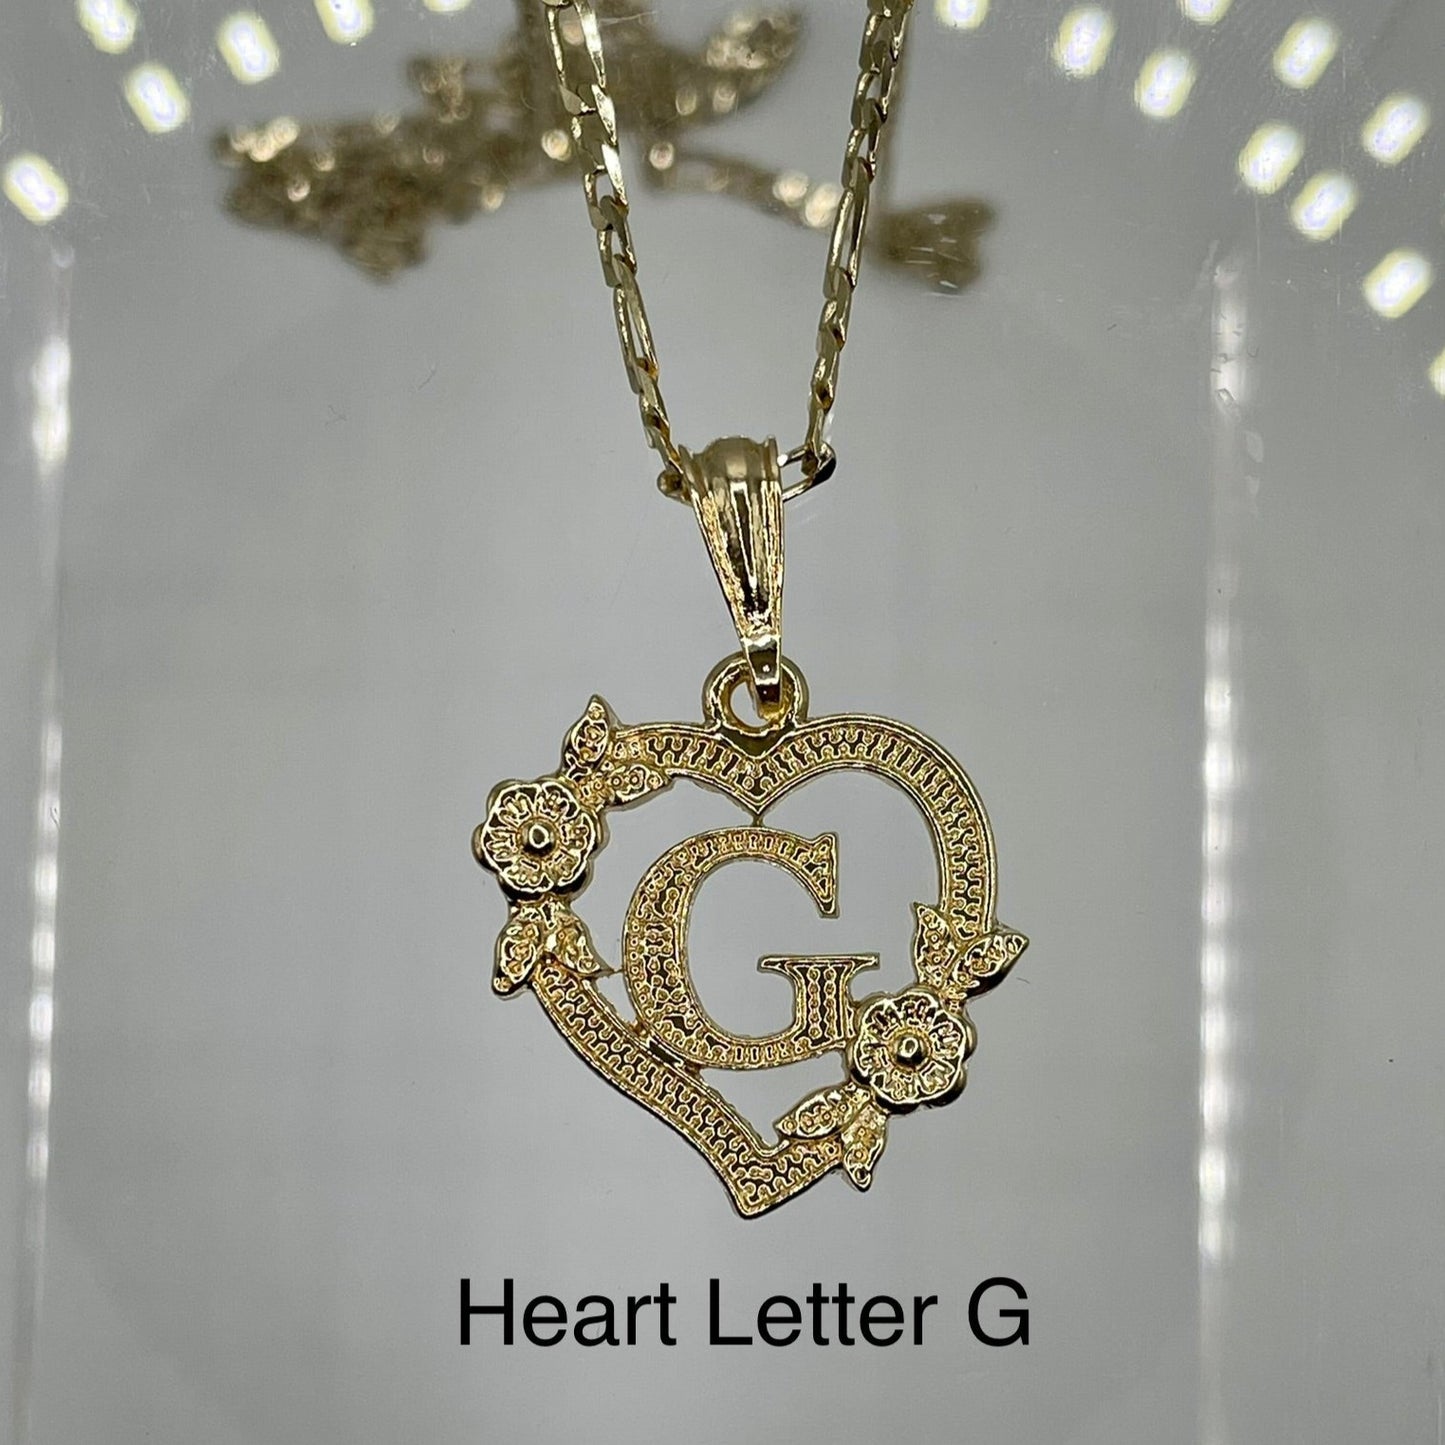 Heart letter G pendant. Gold heart pendant. Letter pendants.